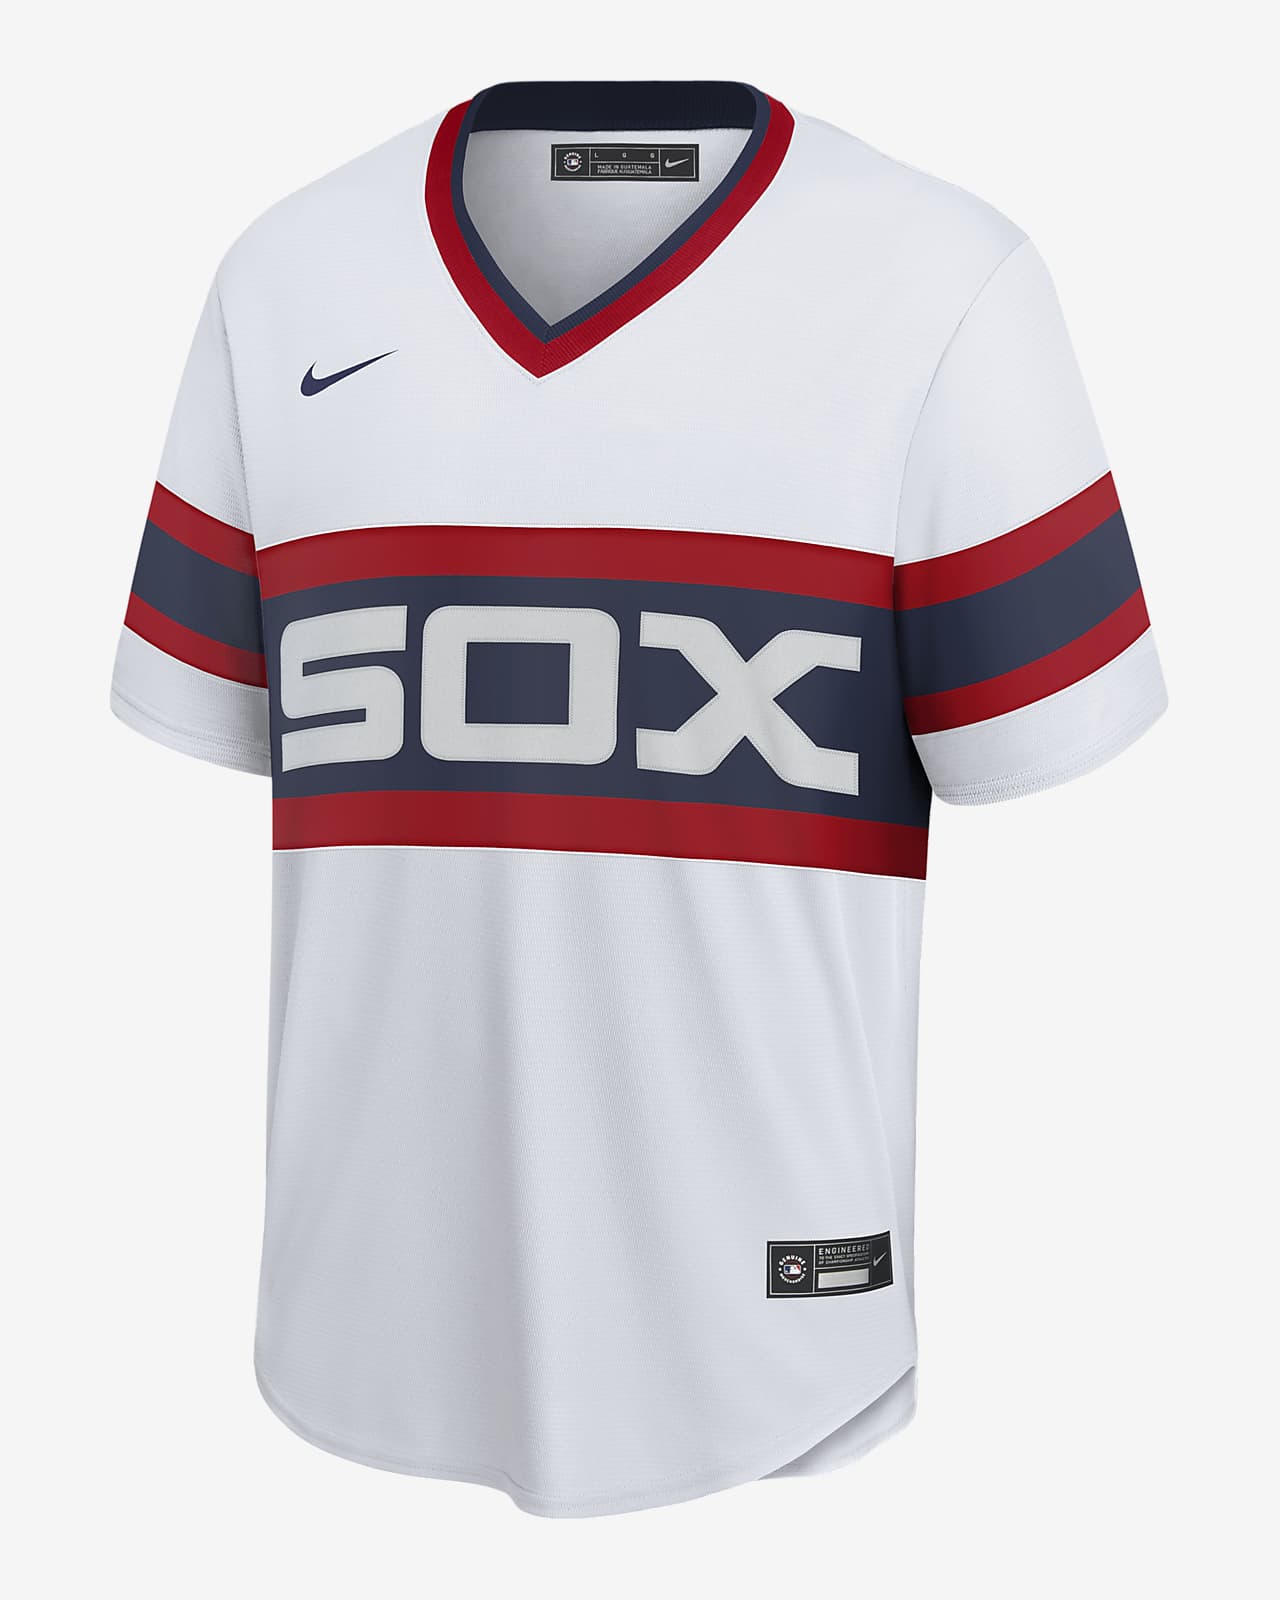 white sox baseball jersey